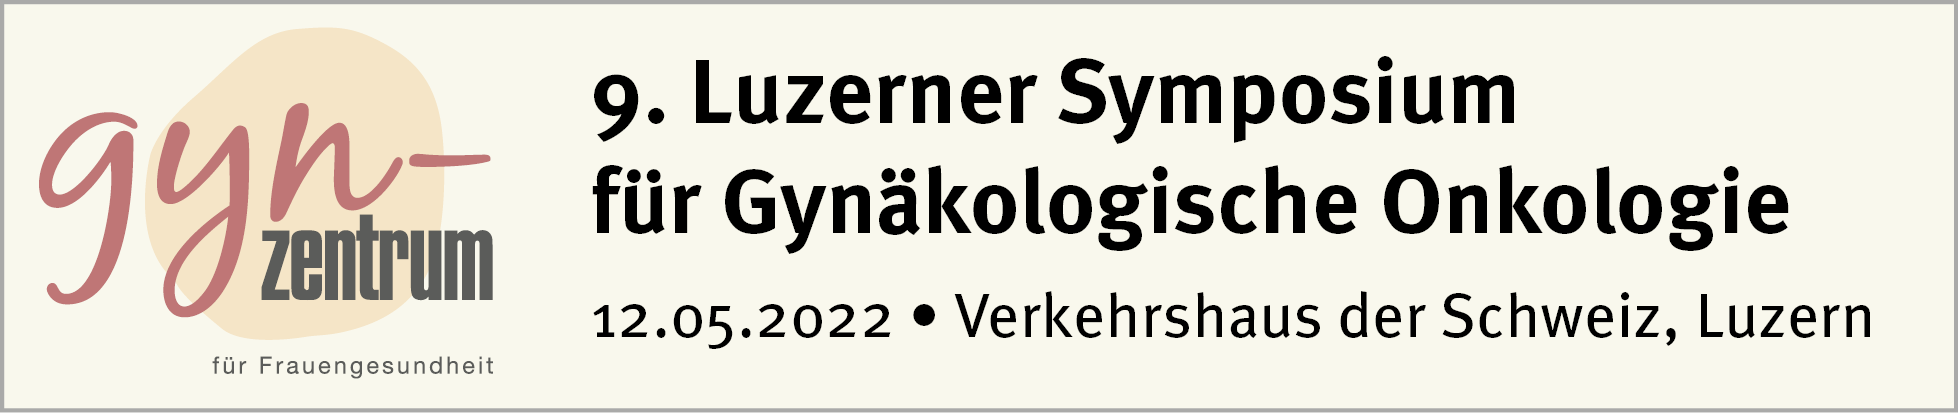 8. Luzerner Symposium für Gynäkologische Onkologie 2021